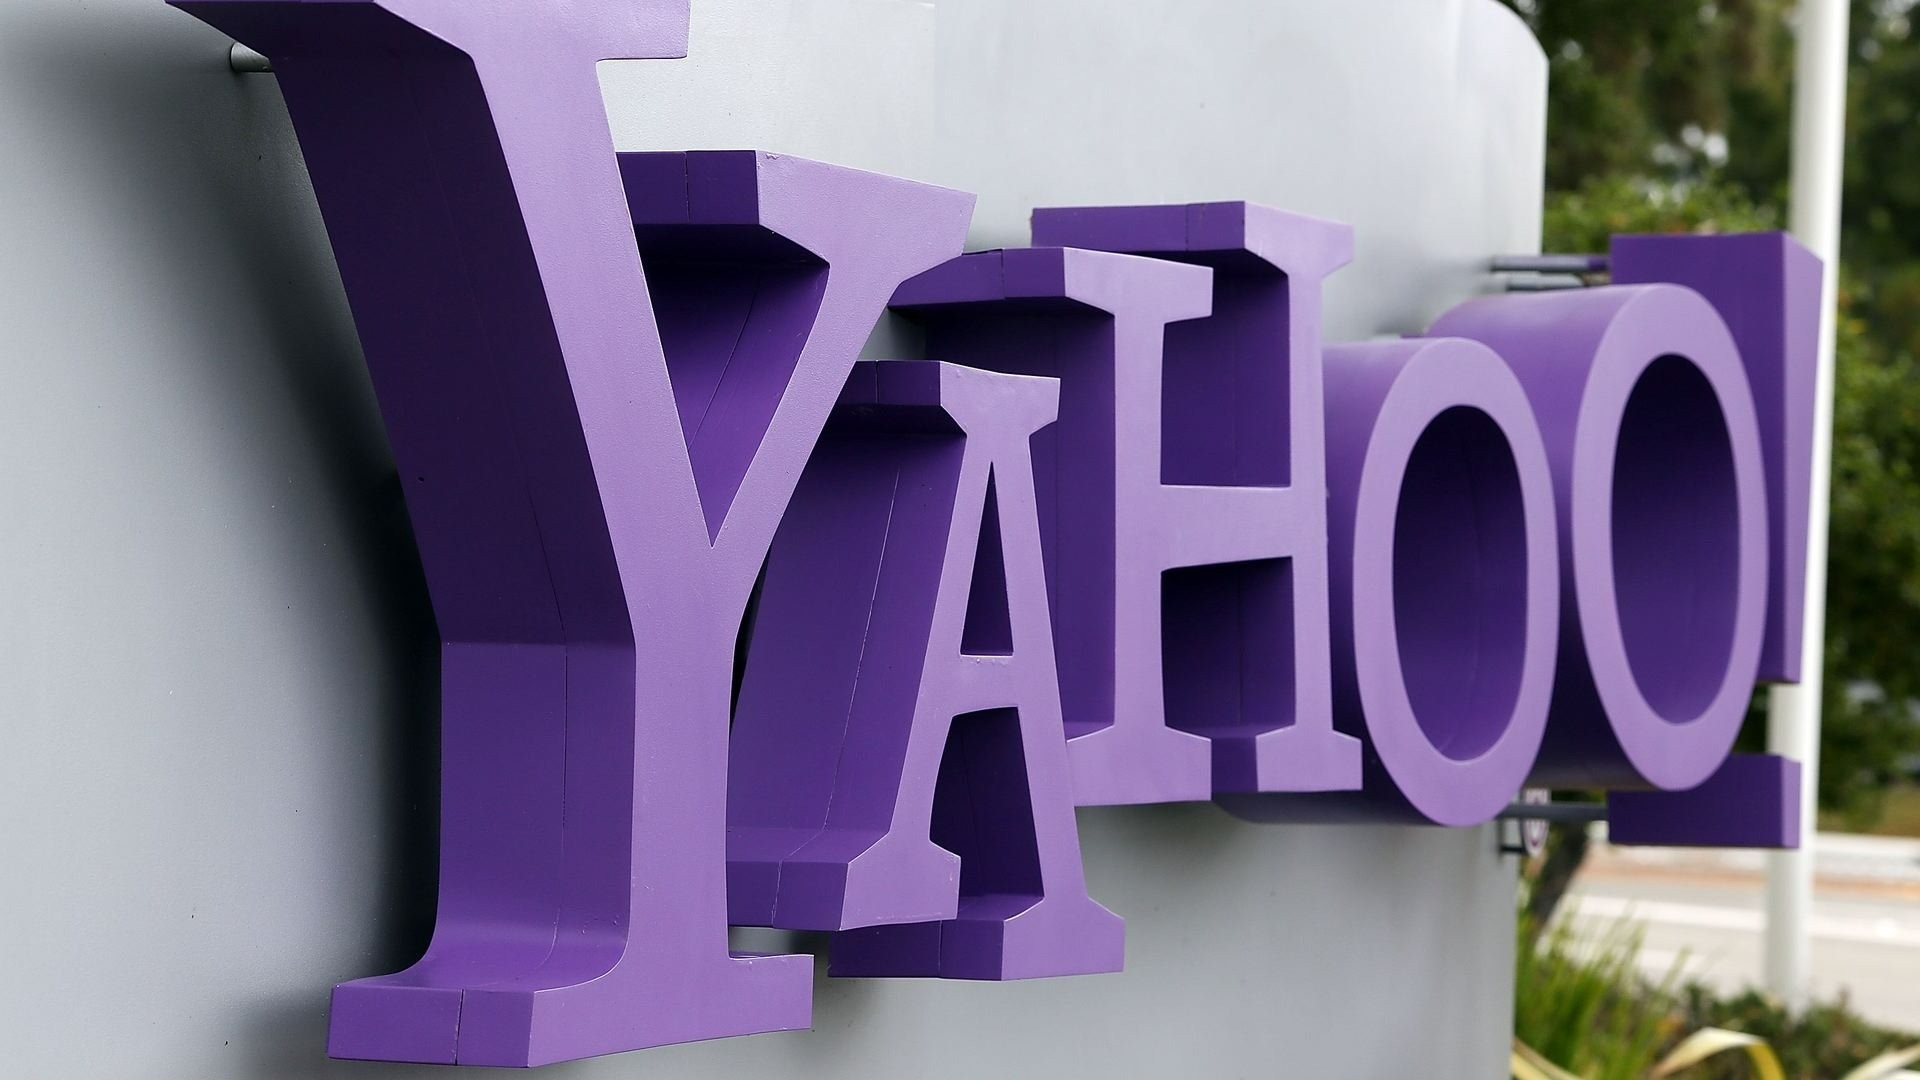 Portal Yahoo encerra operações no Brasil. Será que a empresa tem futuro?